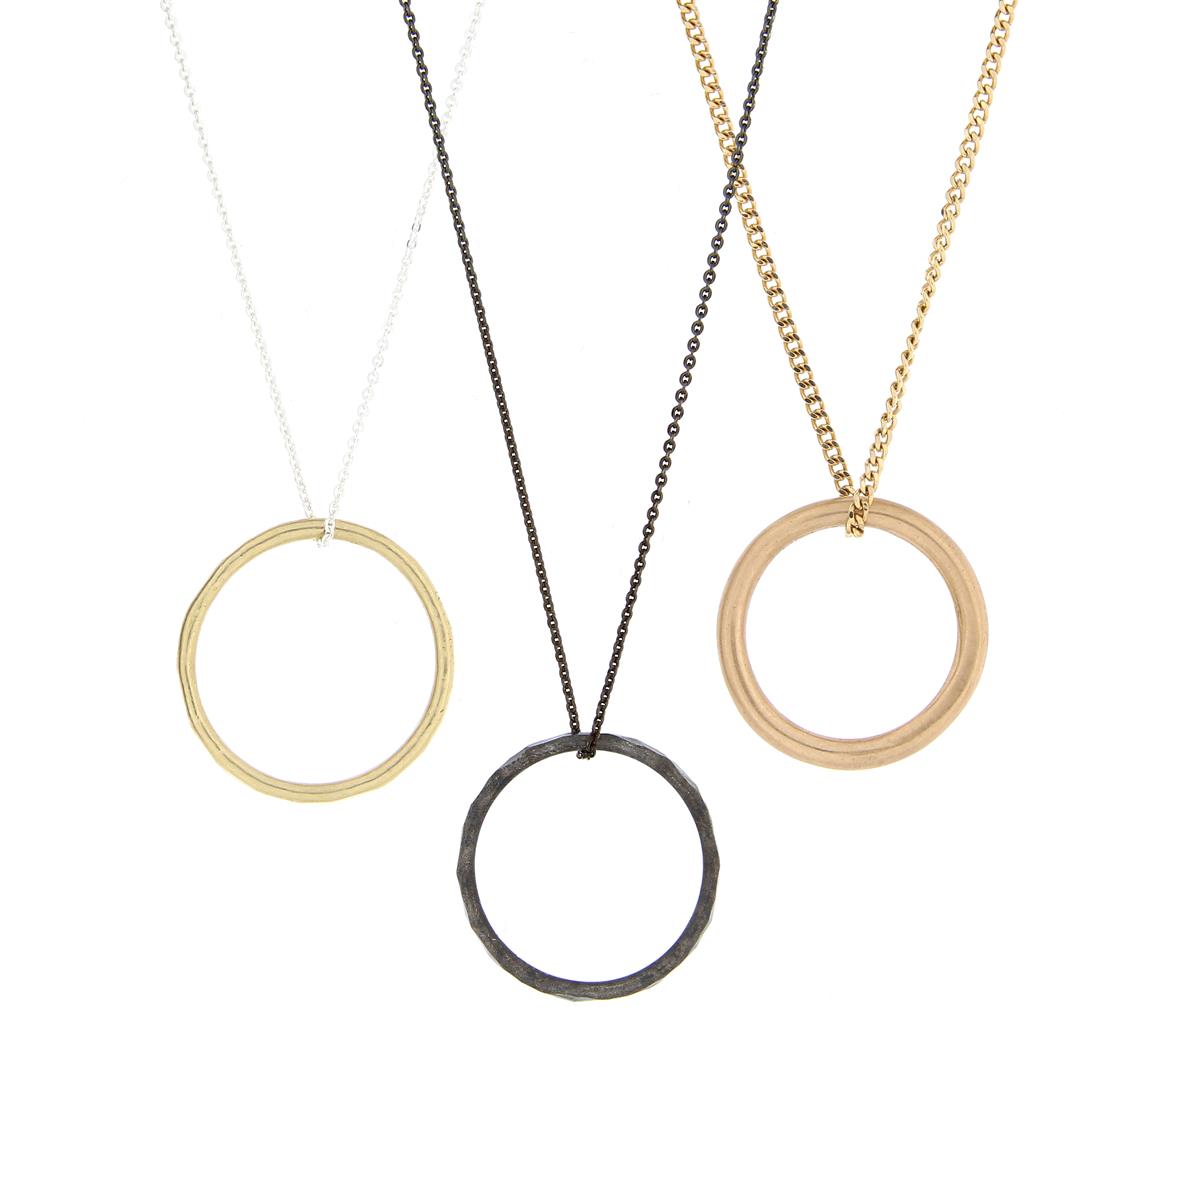 Katie g. Jewellery - Ringe auf Ketten in silber und Gold 2